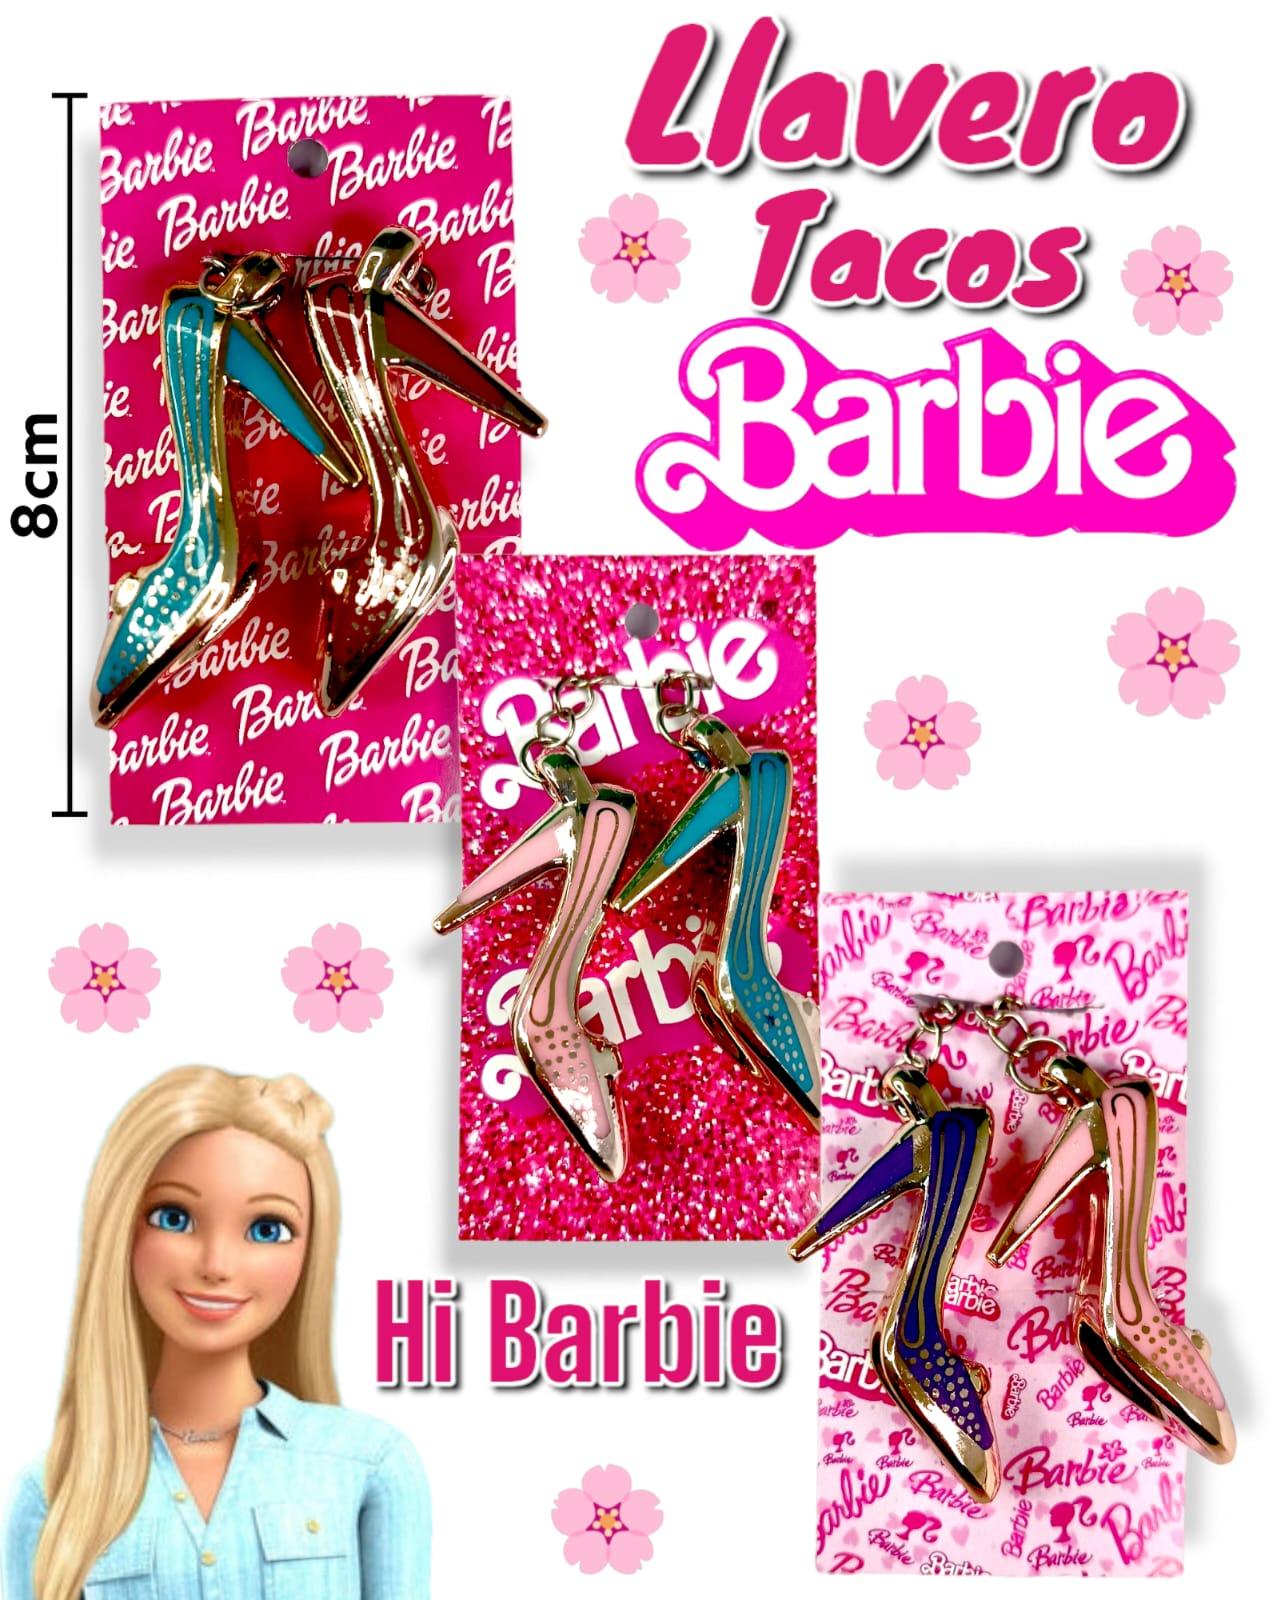 Llavero Tacos BARBIE con Carton Decorativo 8 cm